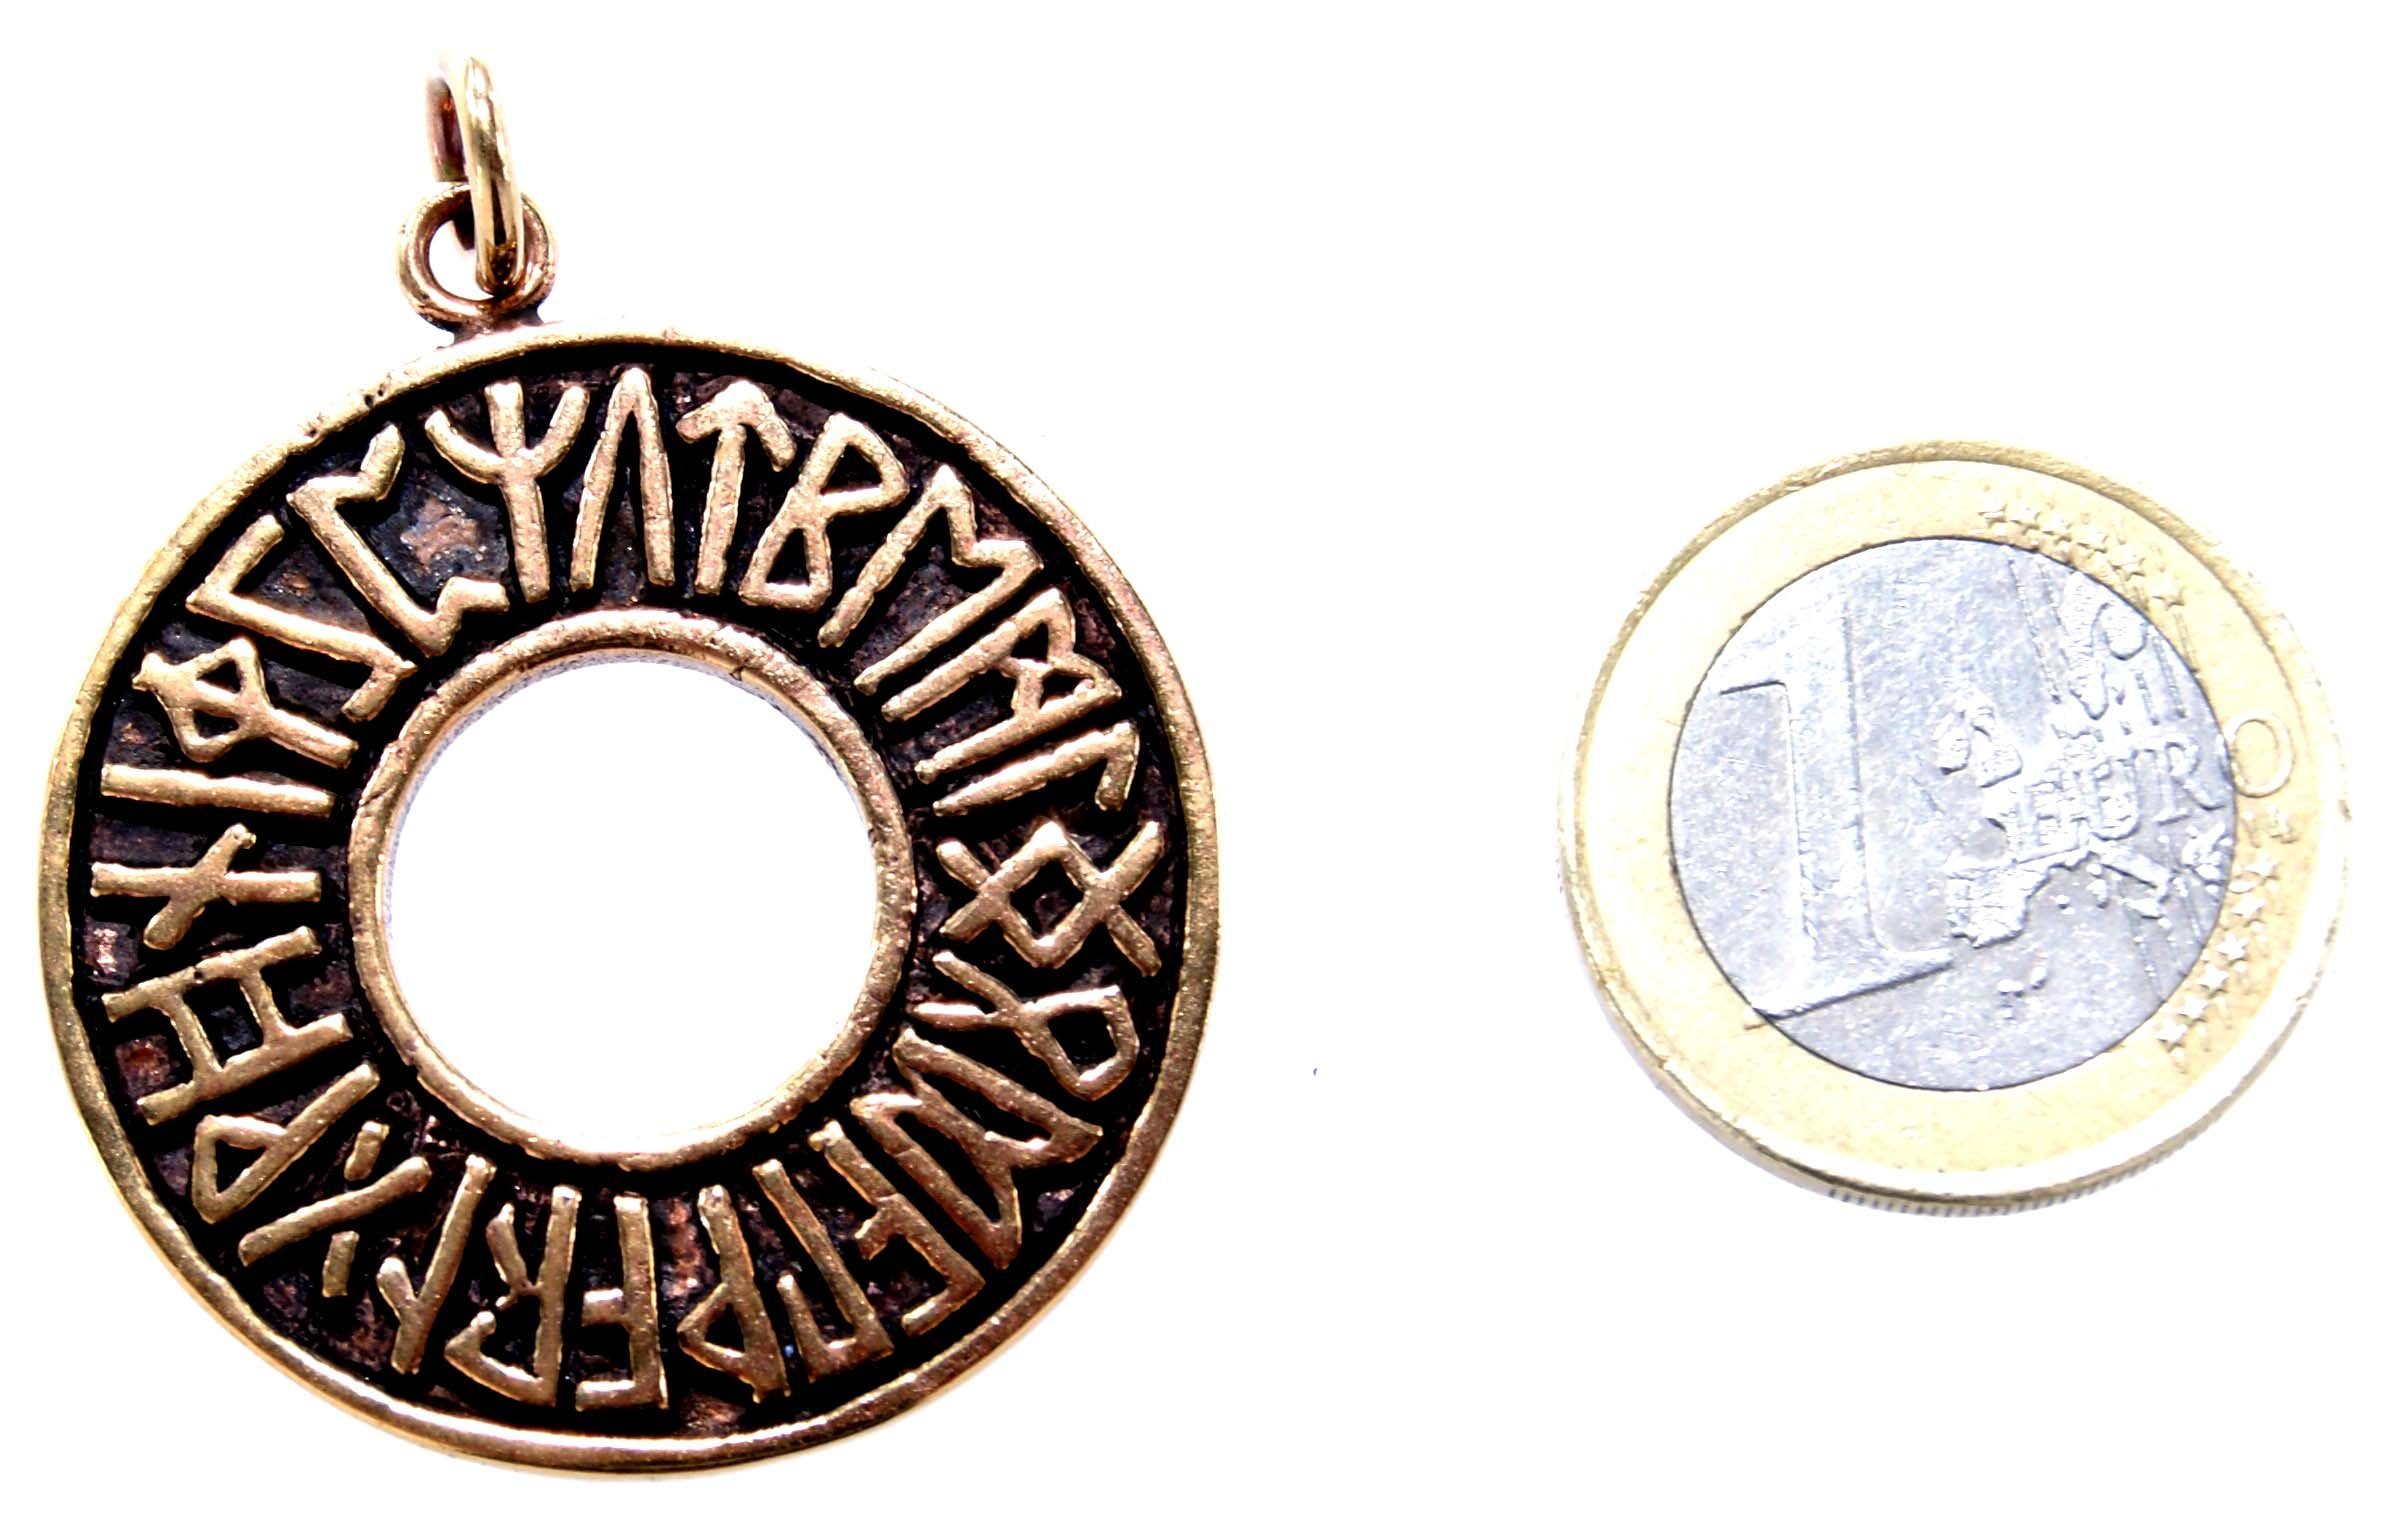 Ring of Runenring Alphabet Kettenanhänger Rune Leather Anhänger Kiss Runen Futhark ABC Bronze